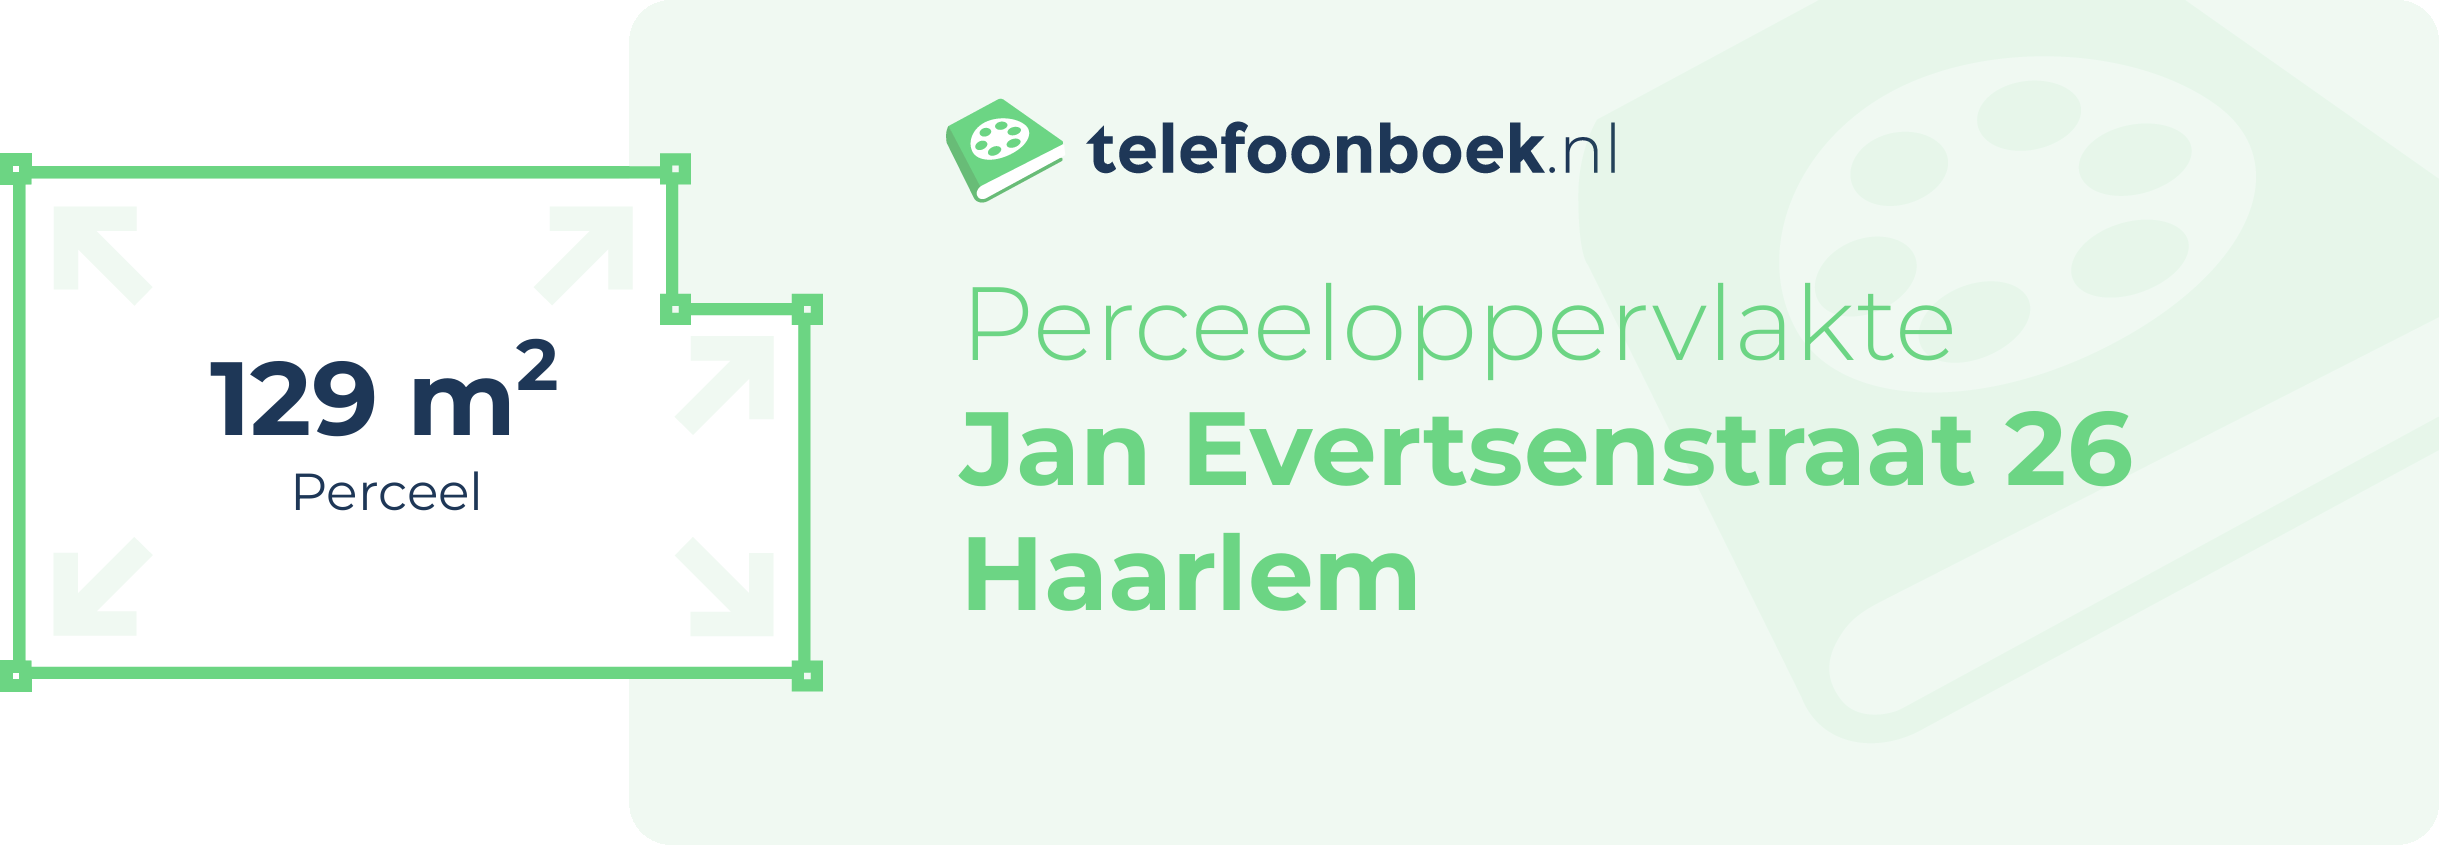 Perceeloppervlakte Jan Evertsenstraat 26 Haarlem